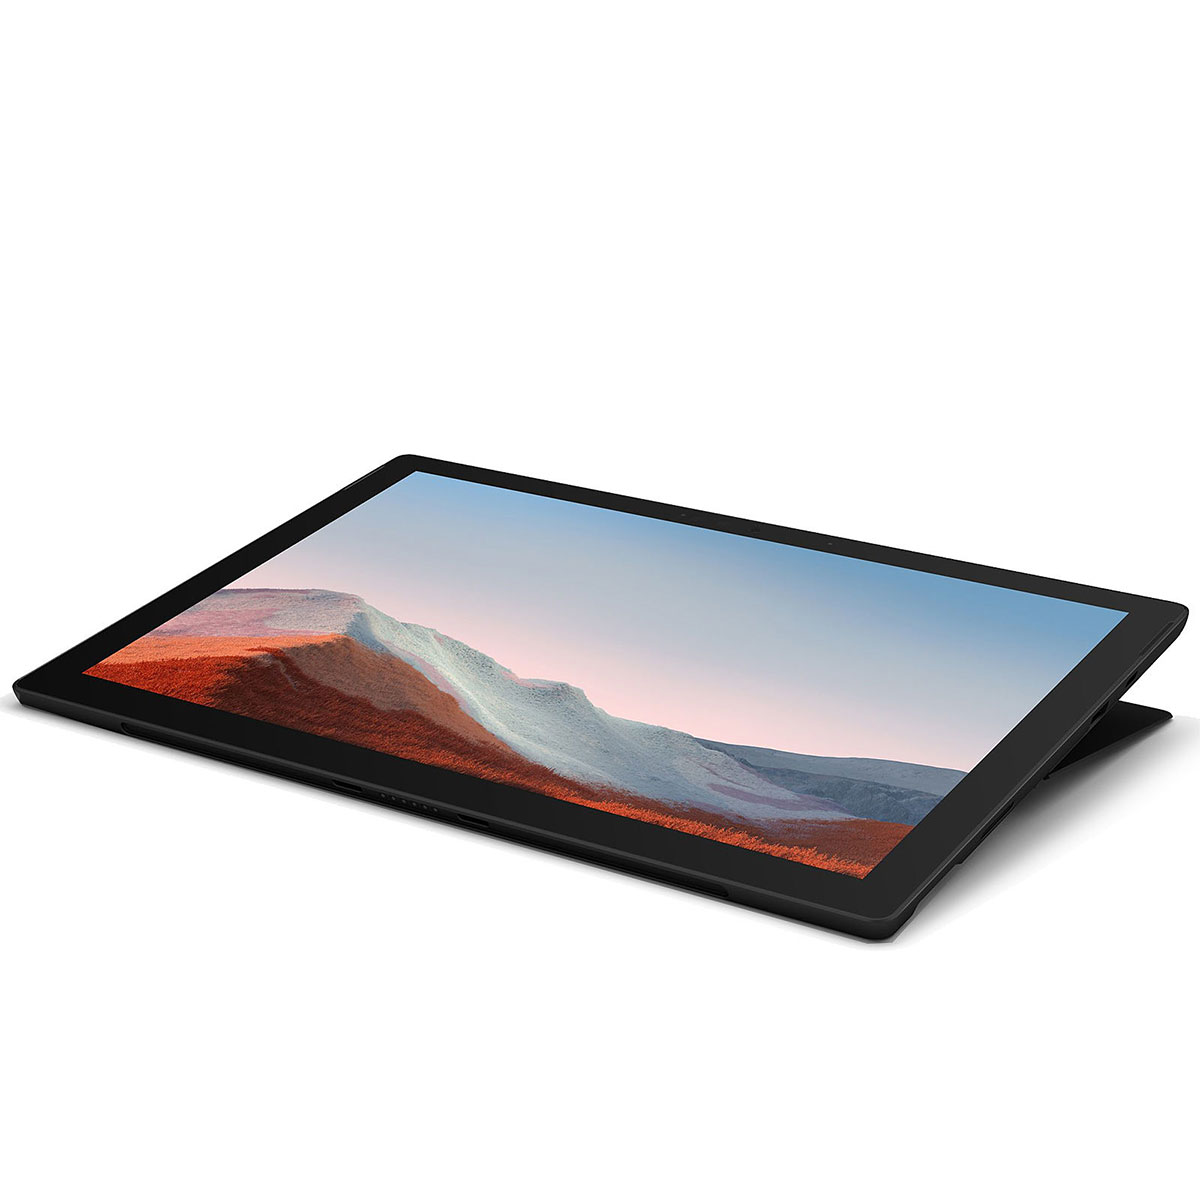 Office無】Surface pro7 i7 16GB 512GB プラチナ | uzcharmexpo.uz